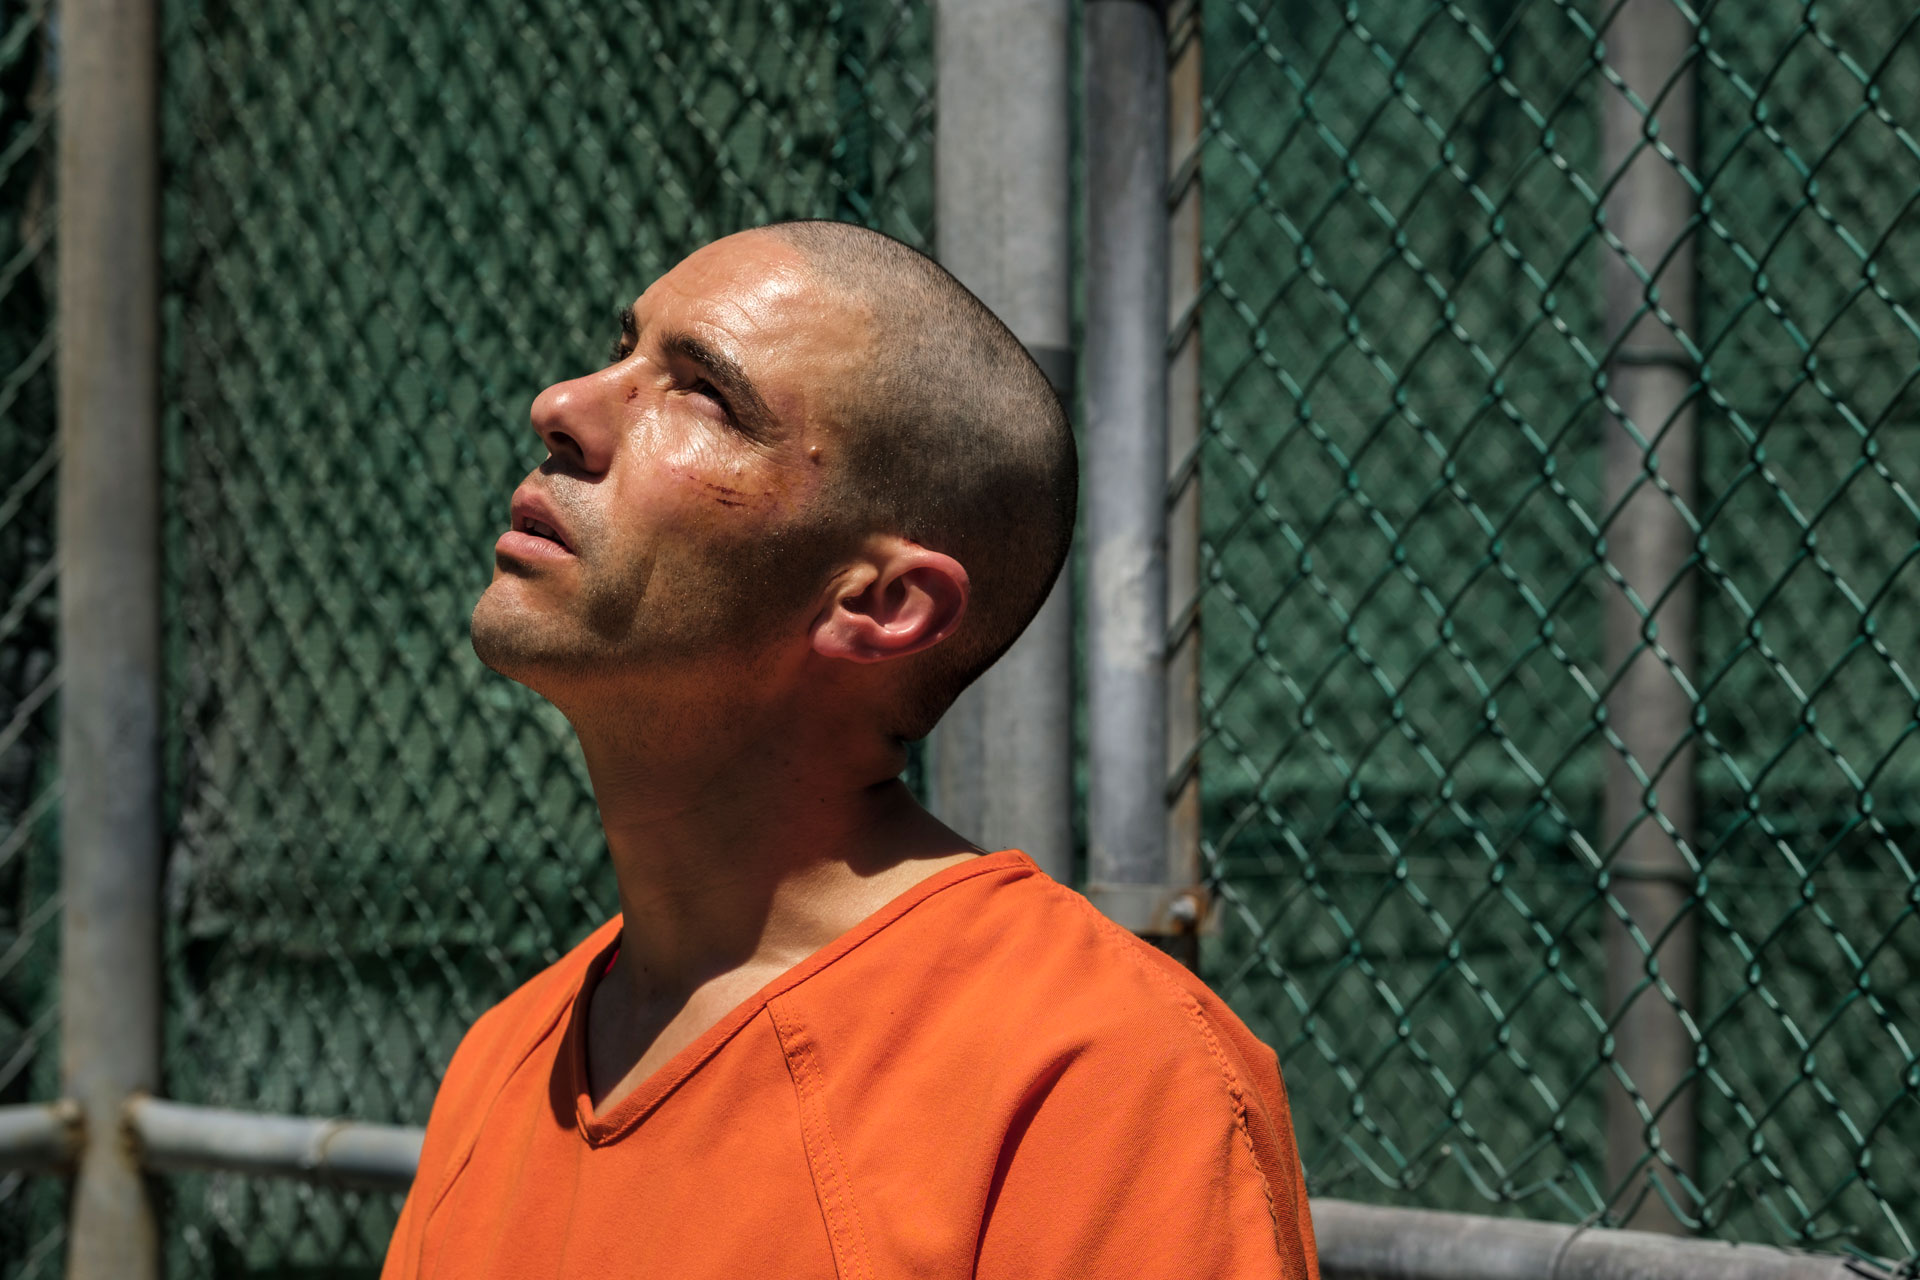 Besteht noch Hoffnung für Mohamedou Ould Slahi (Tahar Rahim) in Guantanamo? Bild: © TOBIS Film GmbH